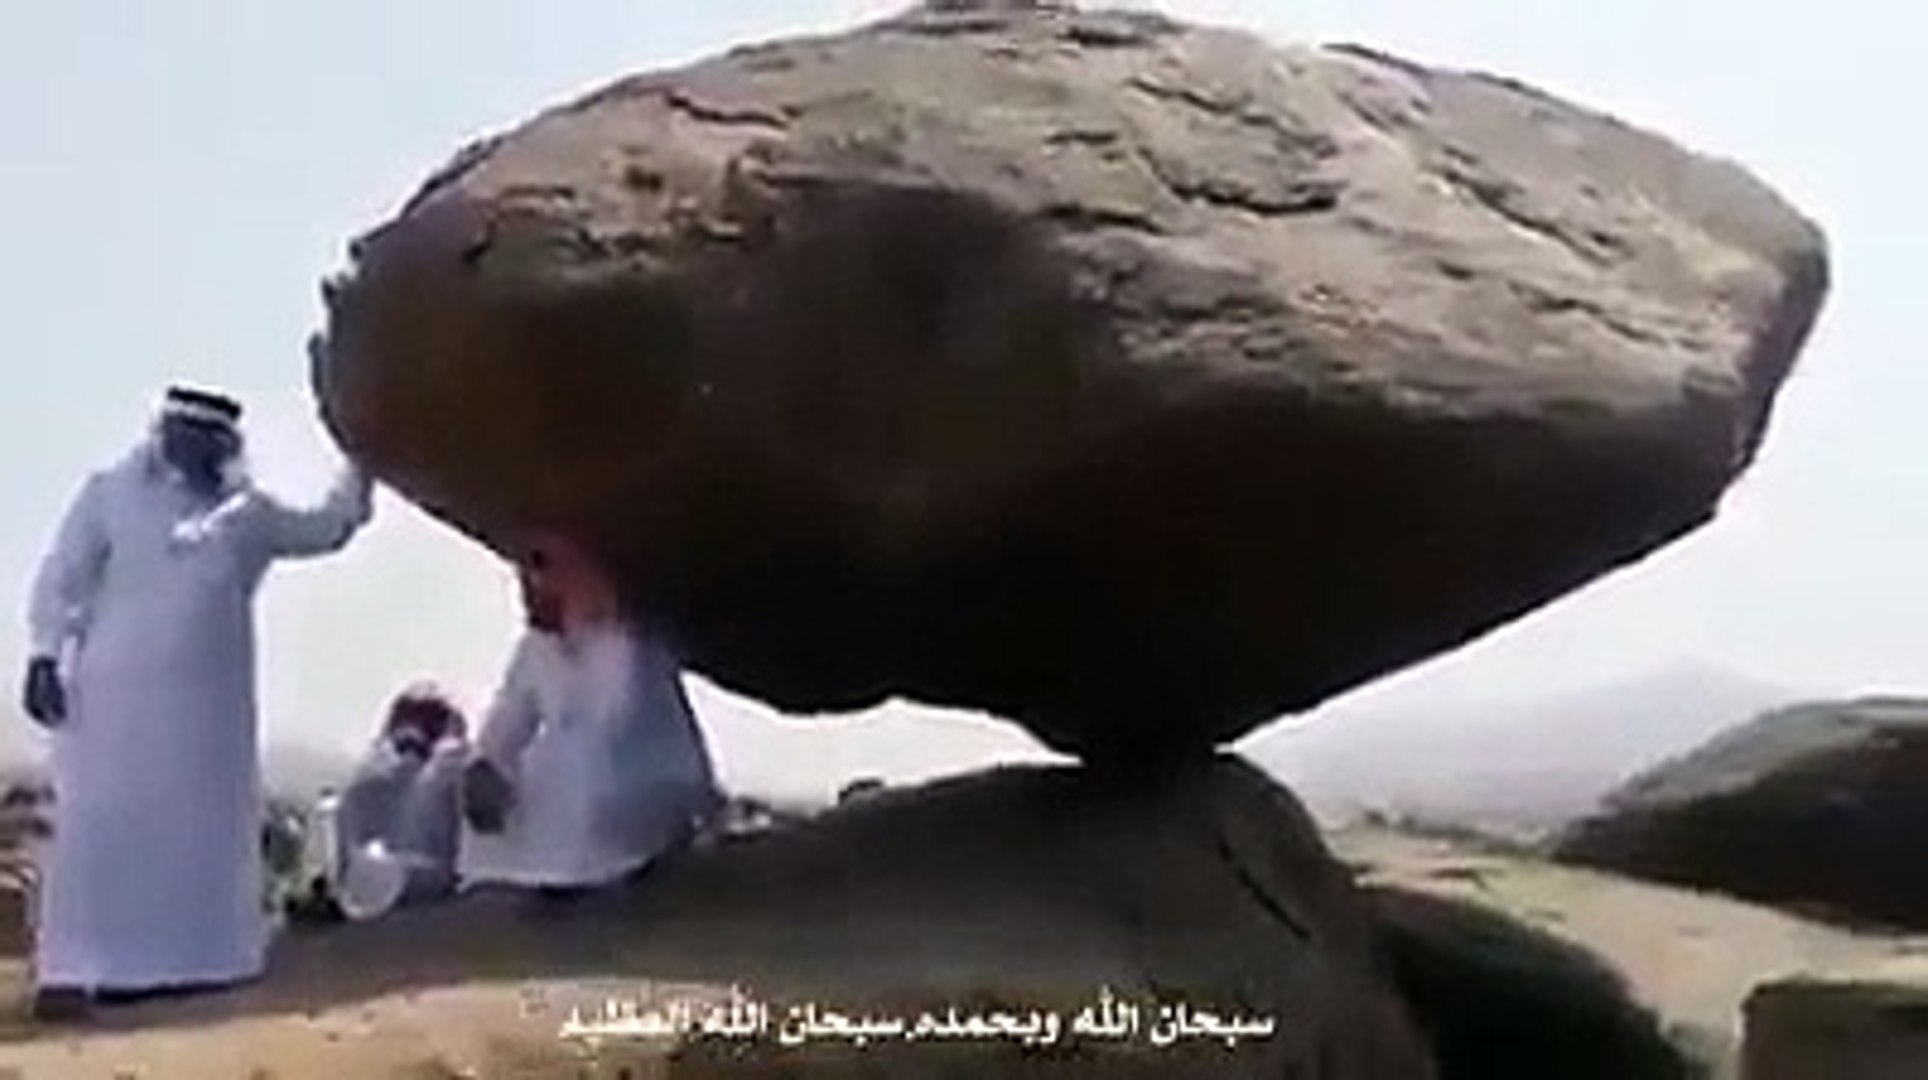 Висячий камень в Аравии.